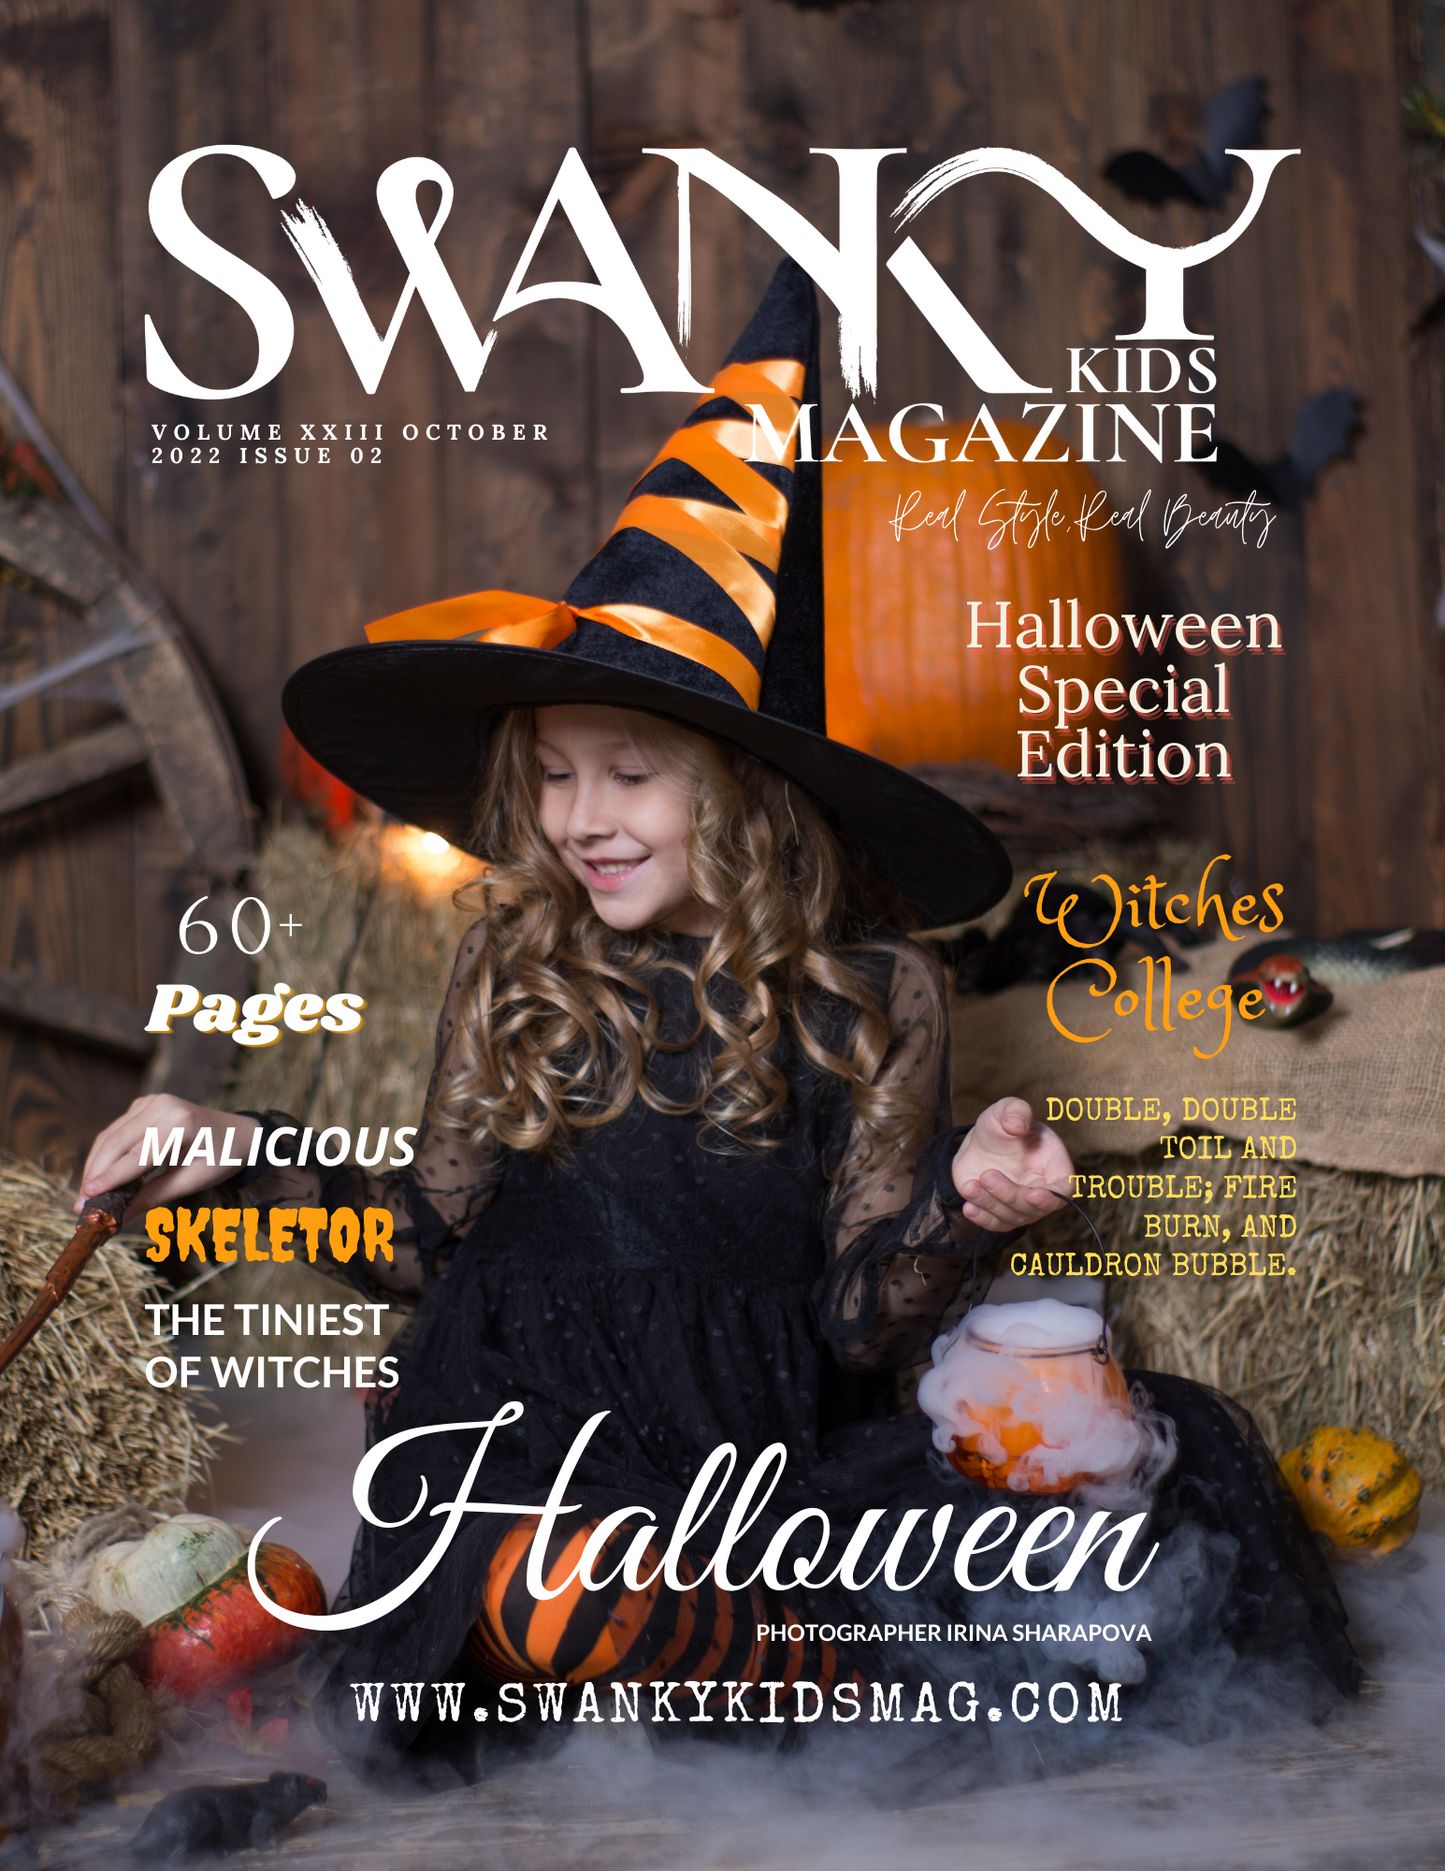 Swanky Kids Magazine October 2022 VOL XXIII Issue 02